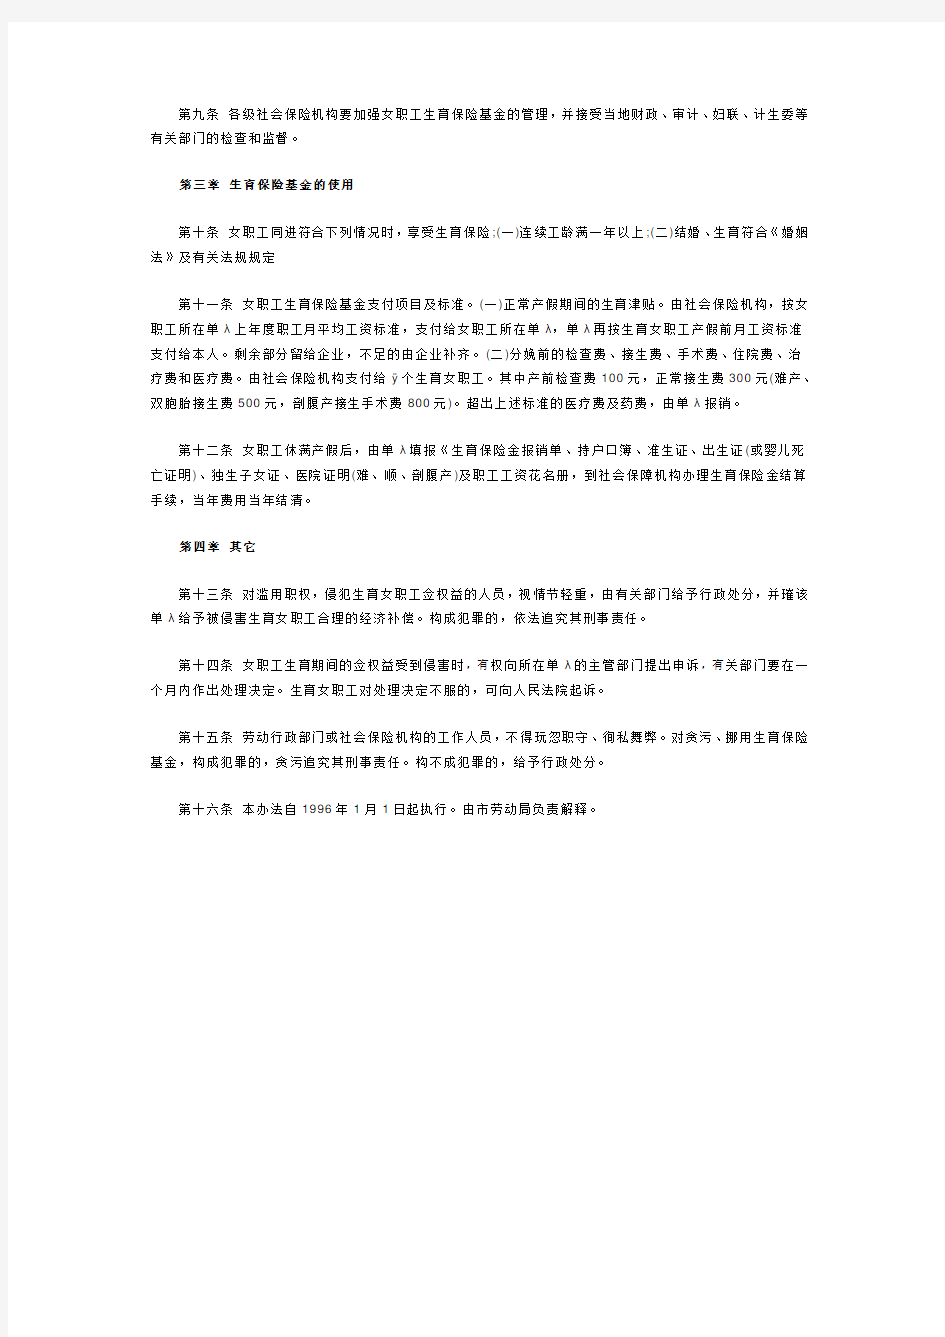 中国女职工生育保险条例